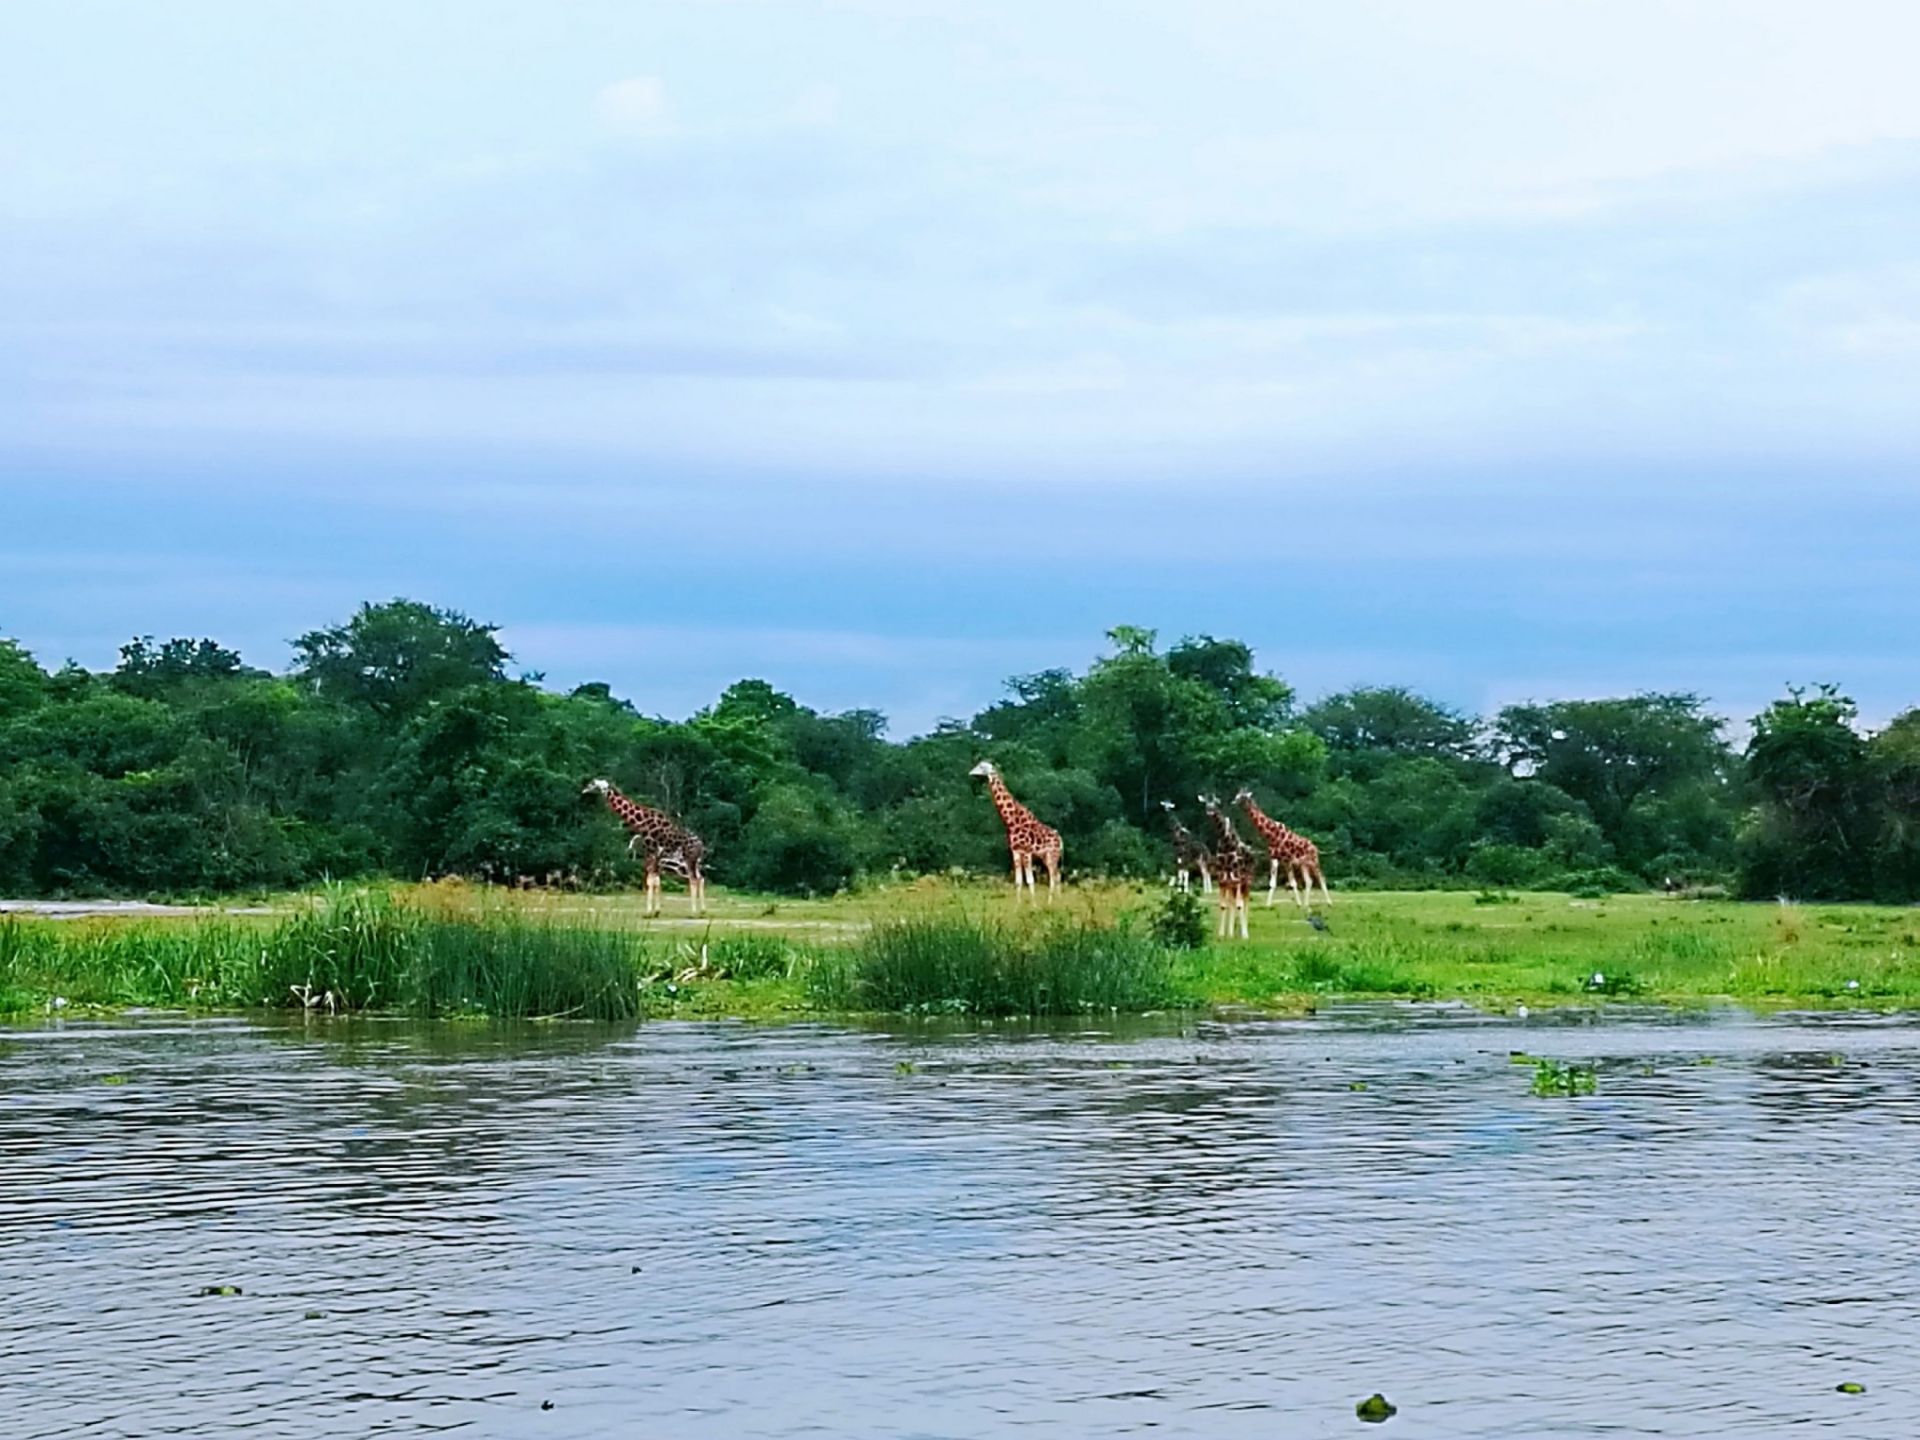 这是乌干达一处非常大型的野生国家公园，大家可以乘坐越野车免费参观这里。在这片茂密辽阔的大草原和沼泽地